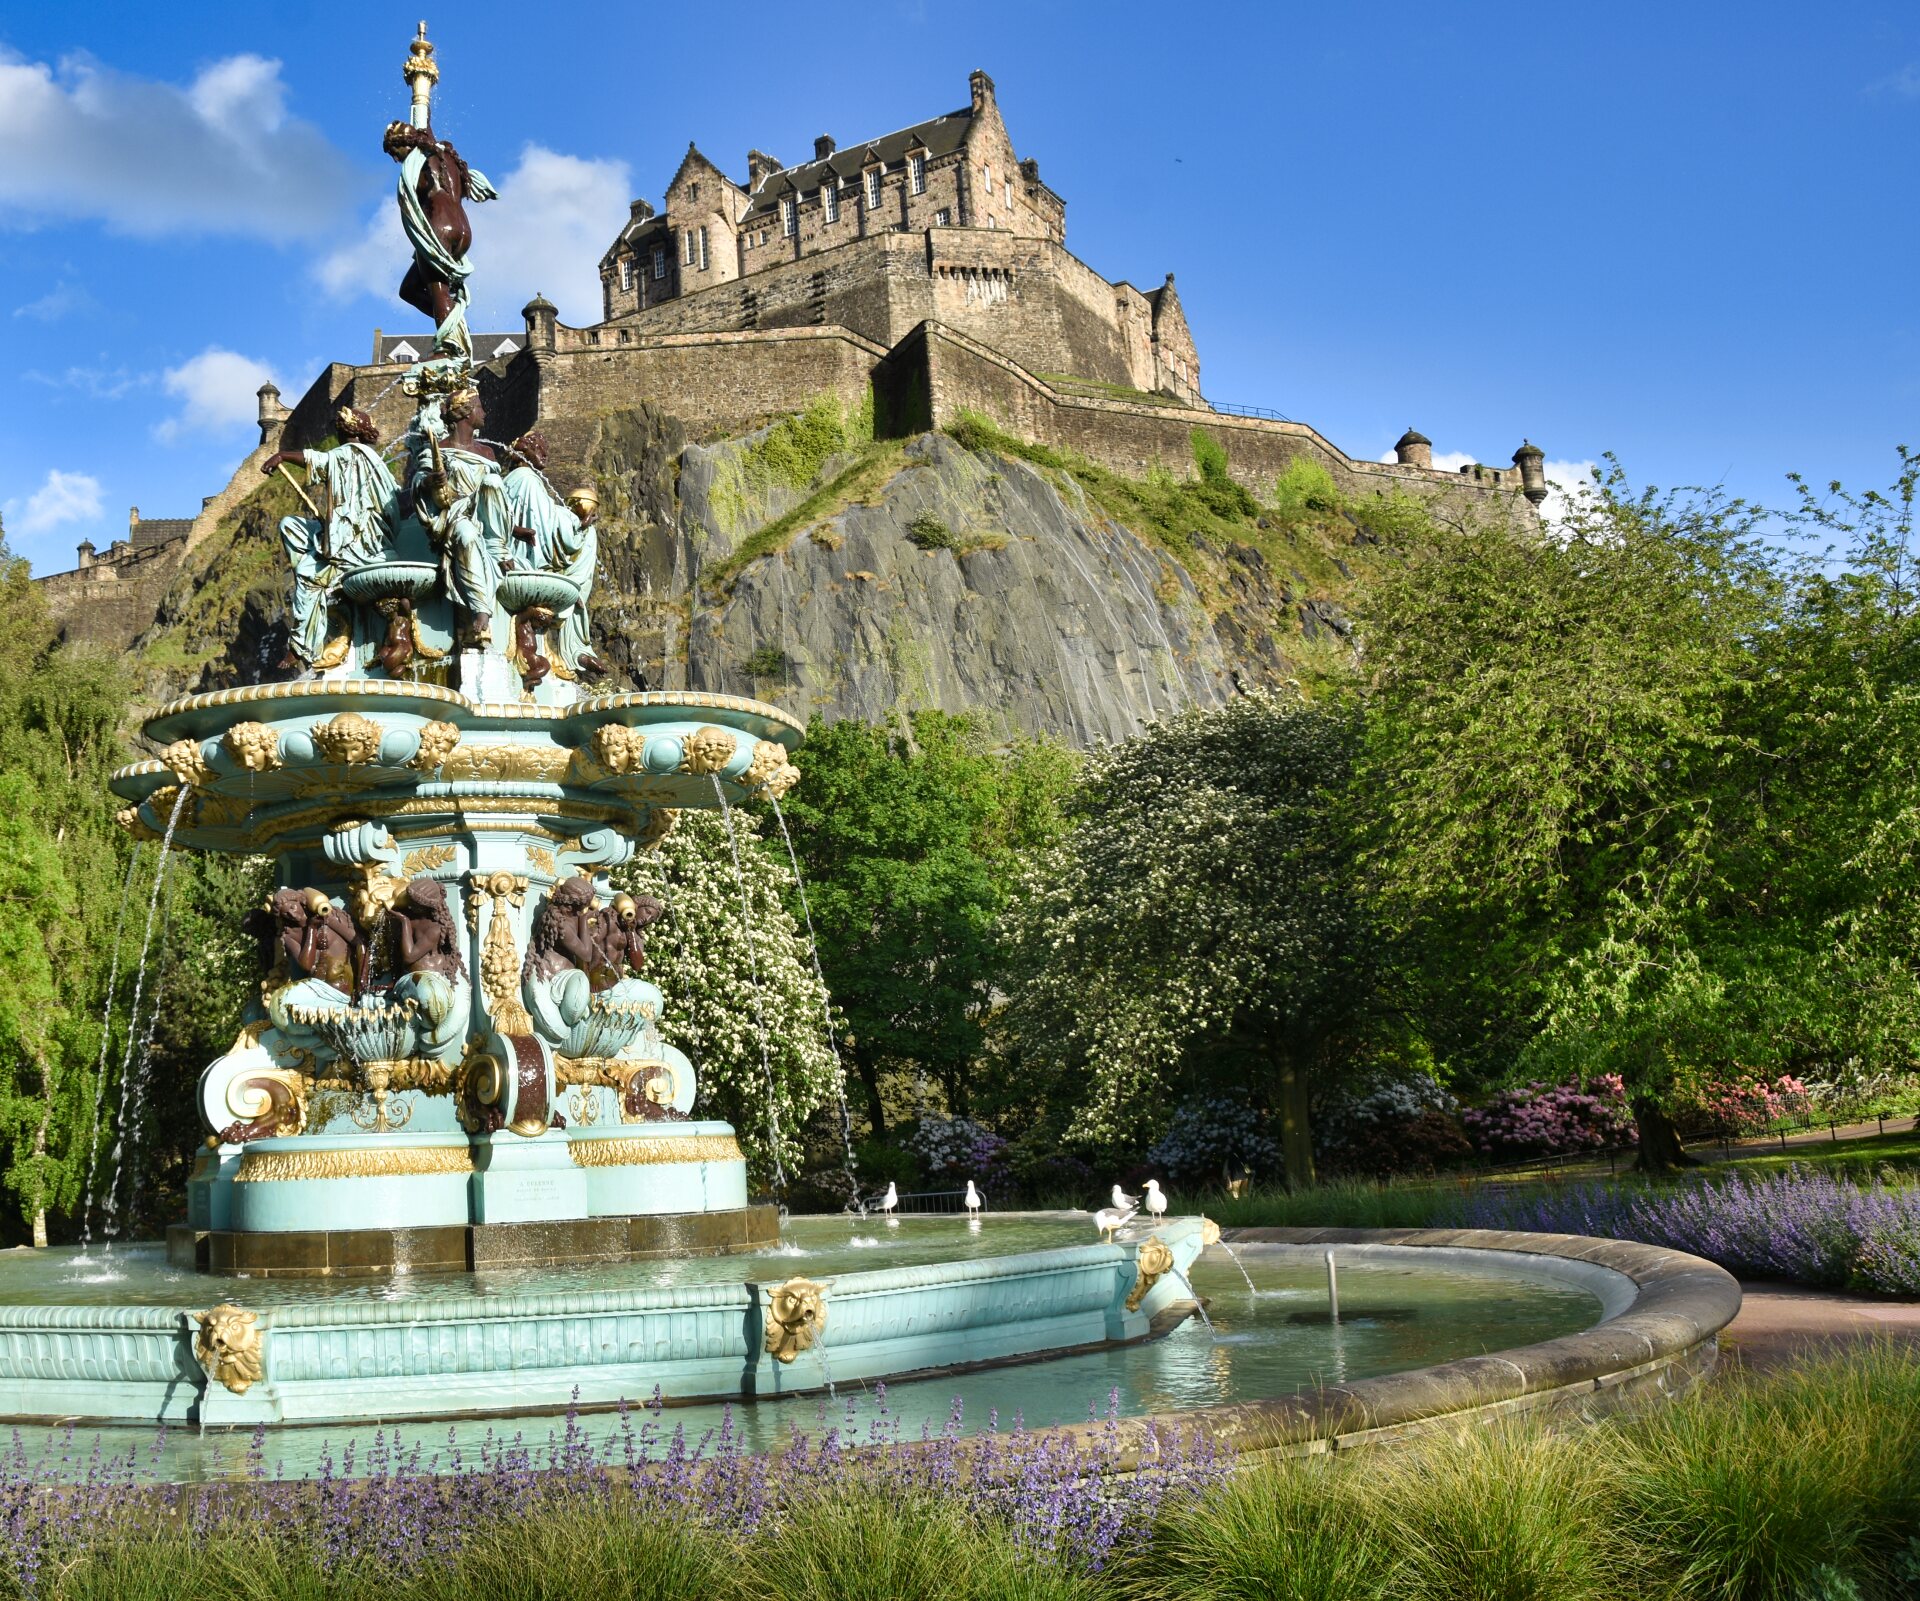 Monumentalbrunnen in hellem Türkis steht in einem Park. Im Hintergrund thront Edinburgh Castle auf einem steilen Felsen.